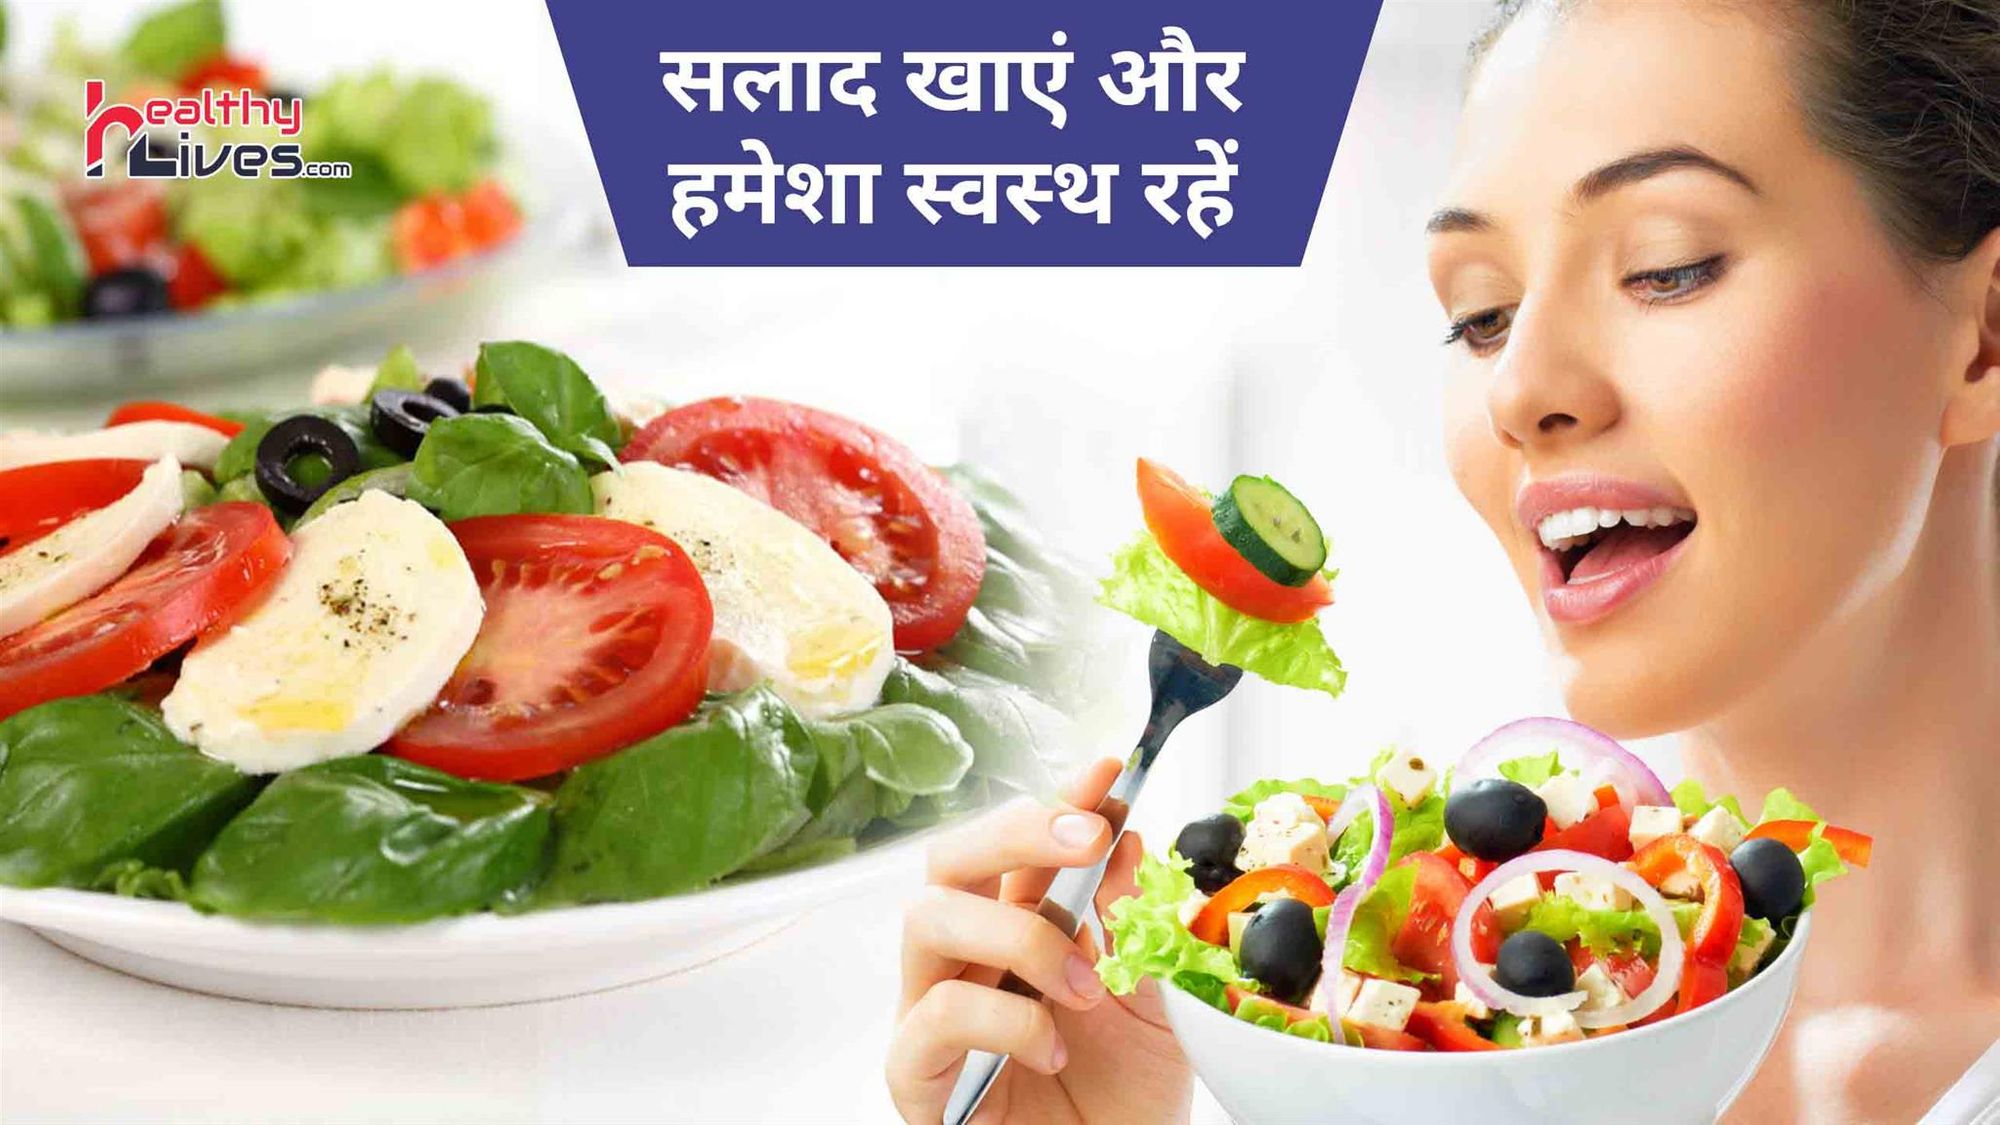 Benefits Of Salad: सलाद खाने से मिलते हैं कई बेमिसाल स्वास्थ्य सम्बंधित फायदे